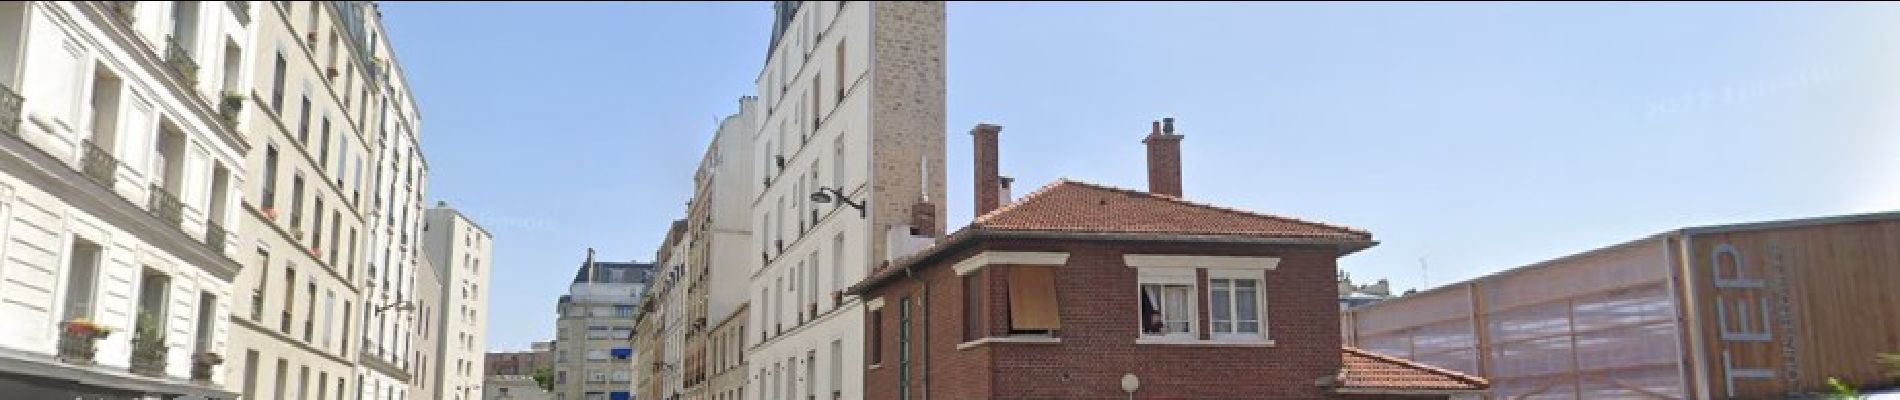 POI Parijs - Immeuble plat vu du croisement Louis braille/rue de Toul - Photo